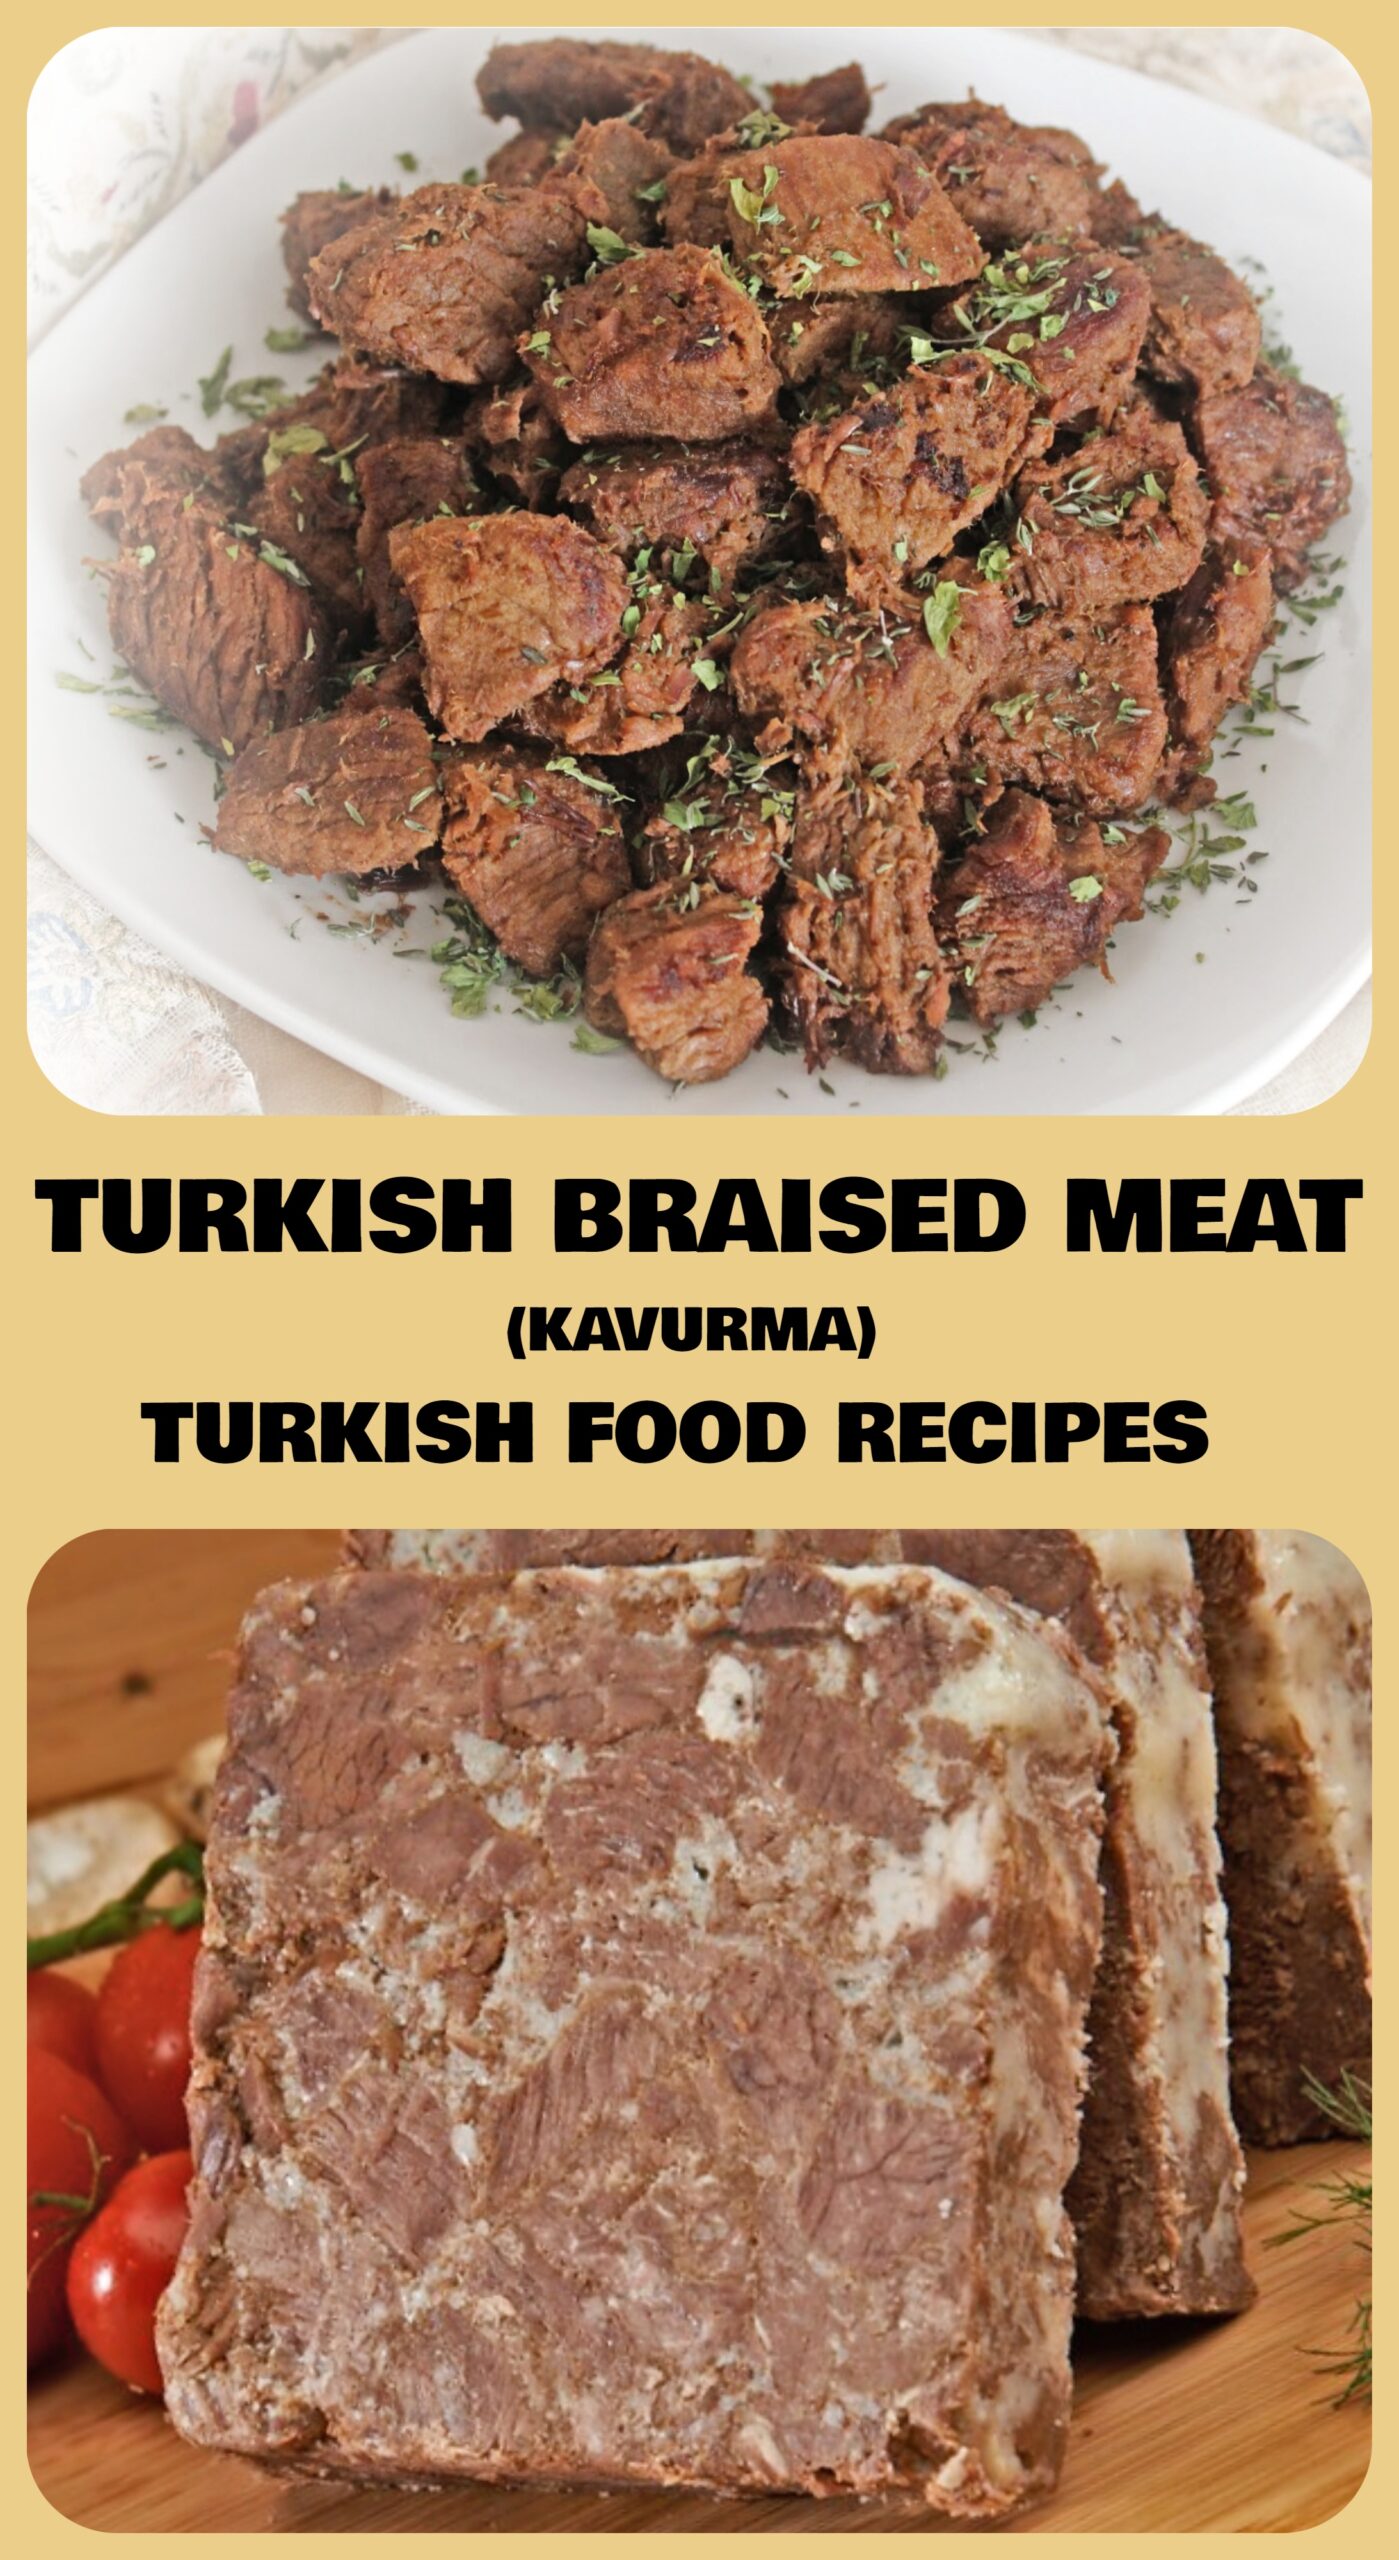 TURKISH BRAISED MEAT - KAVURMA